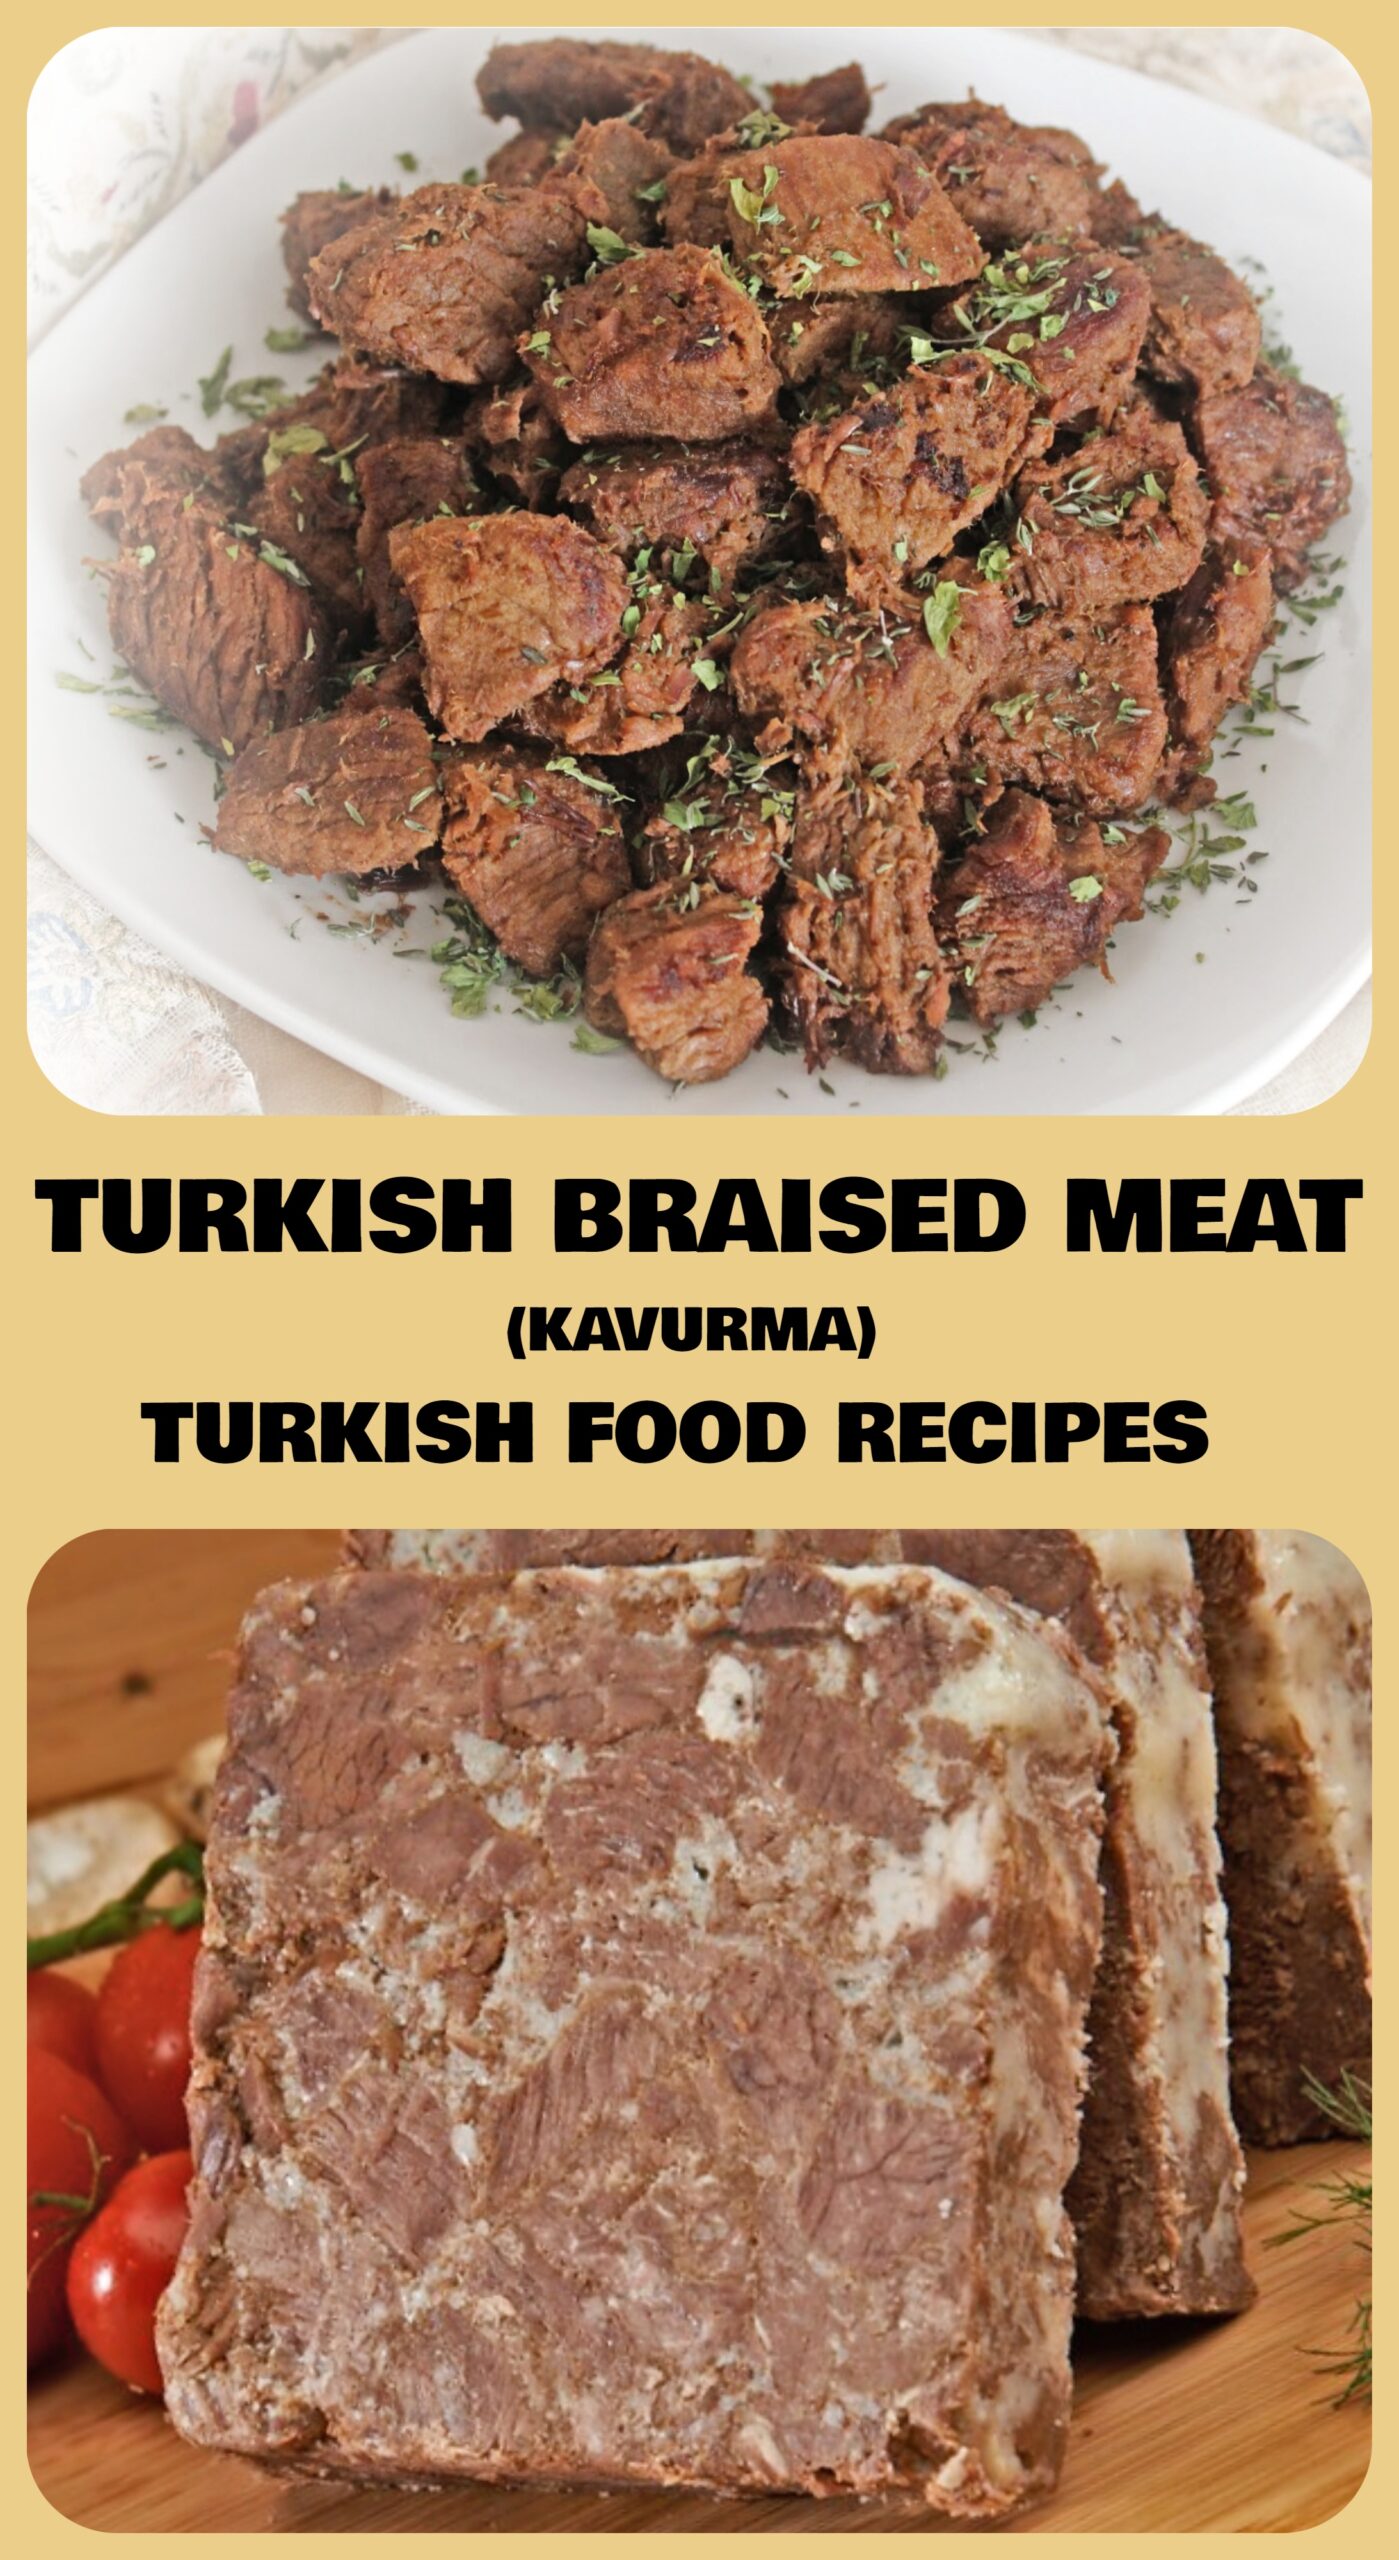 TURKISH BRAISED MEAT - KAVURMA